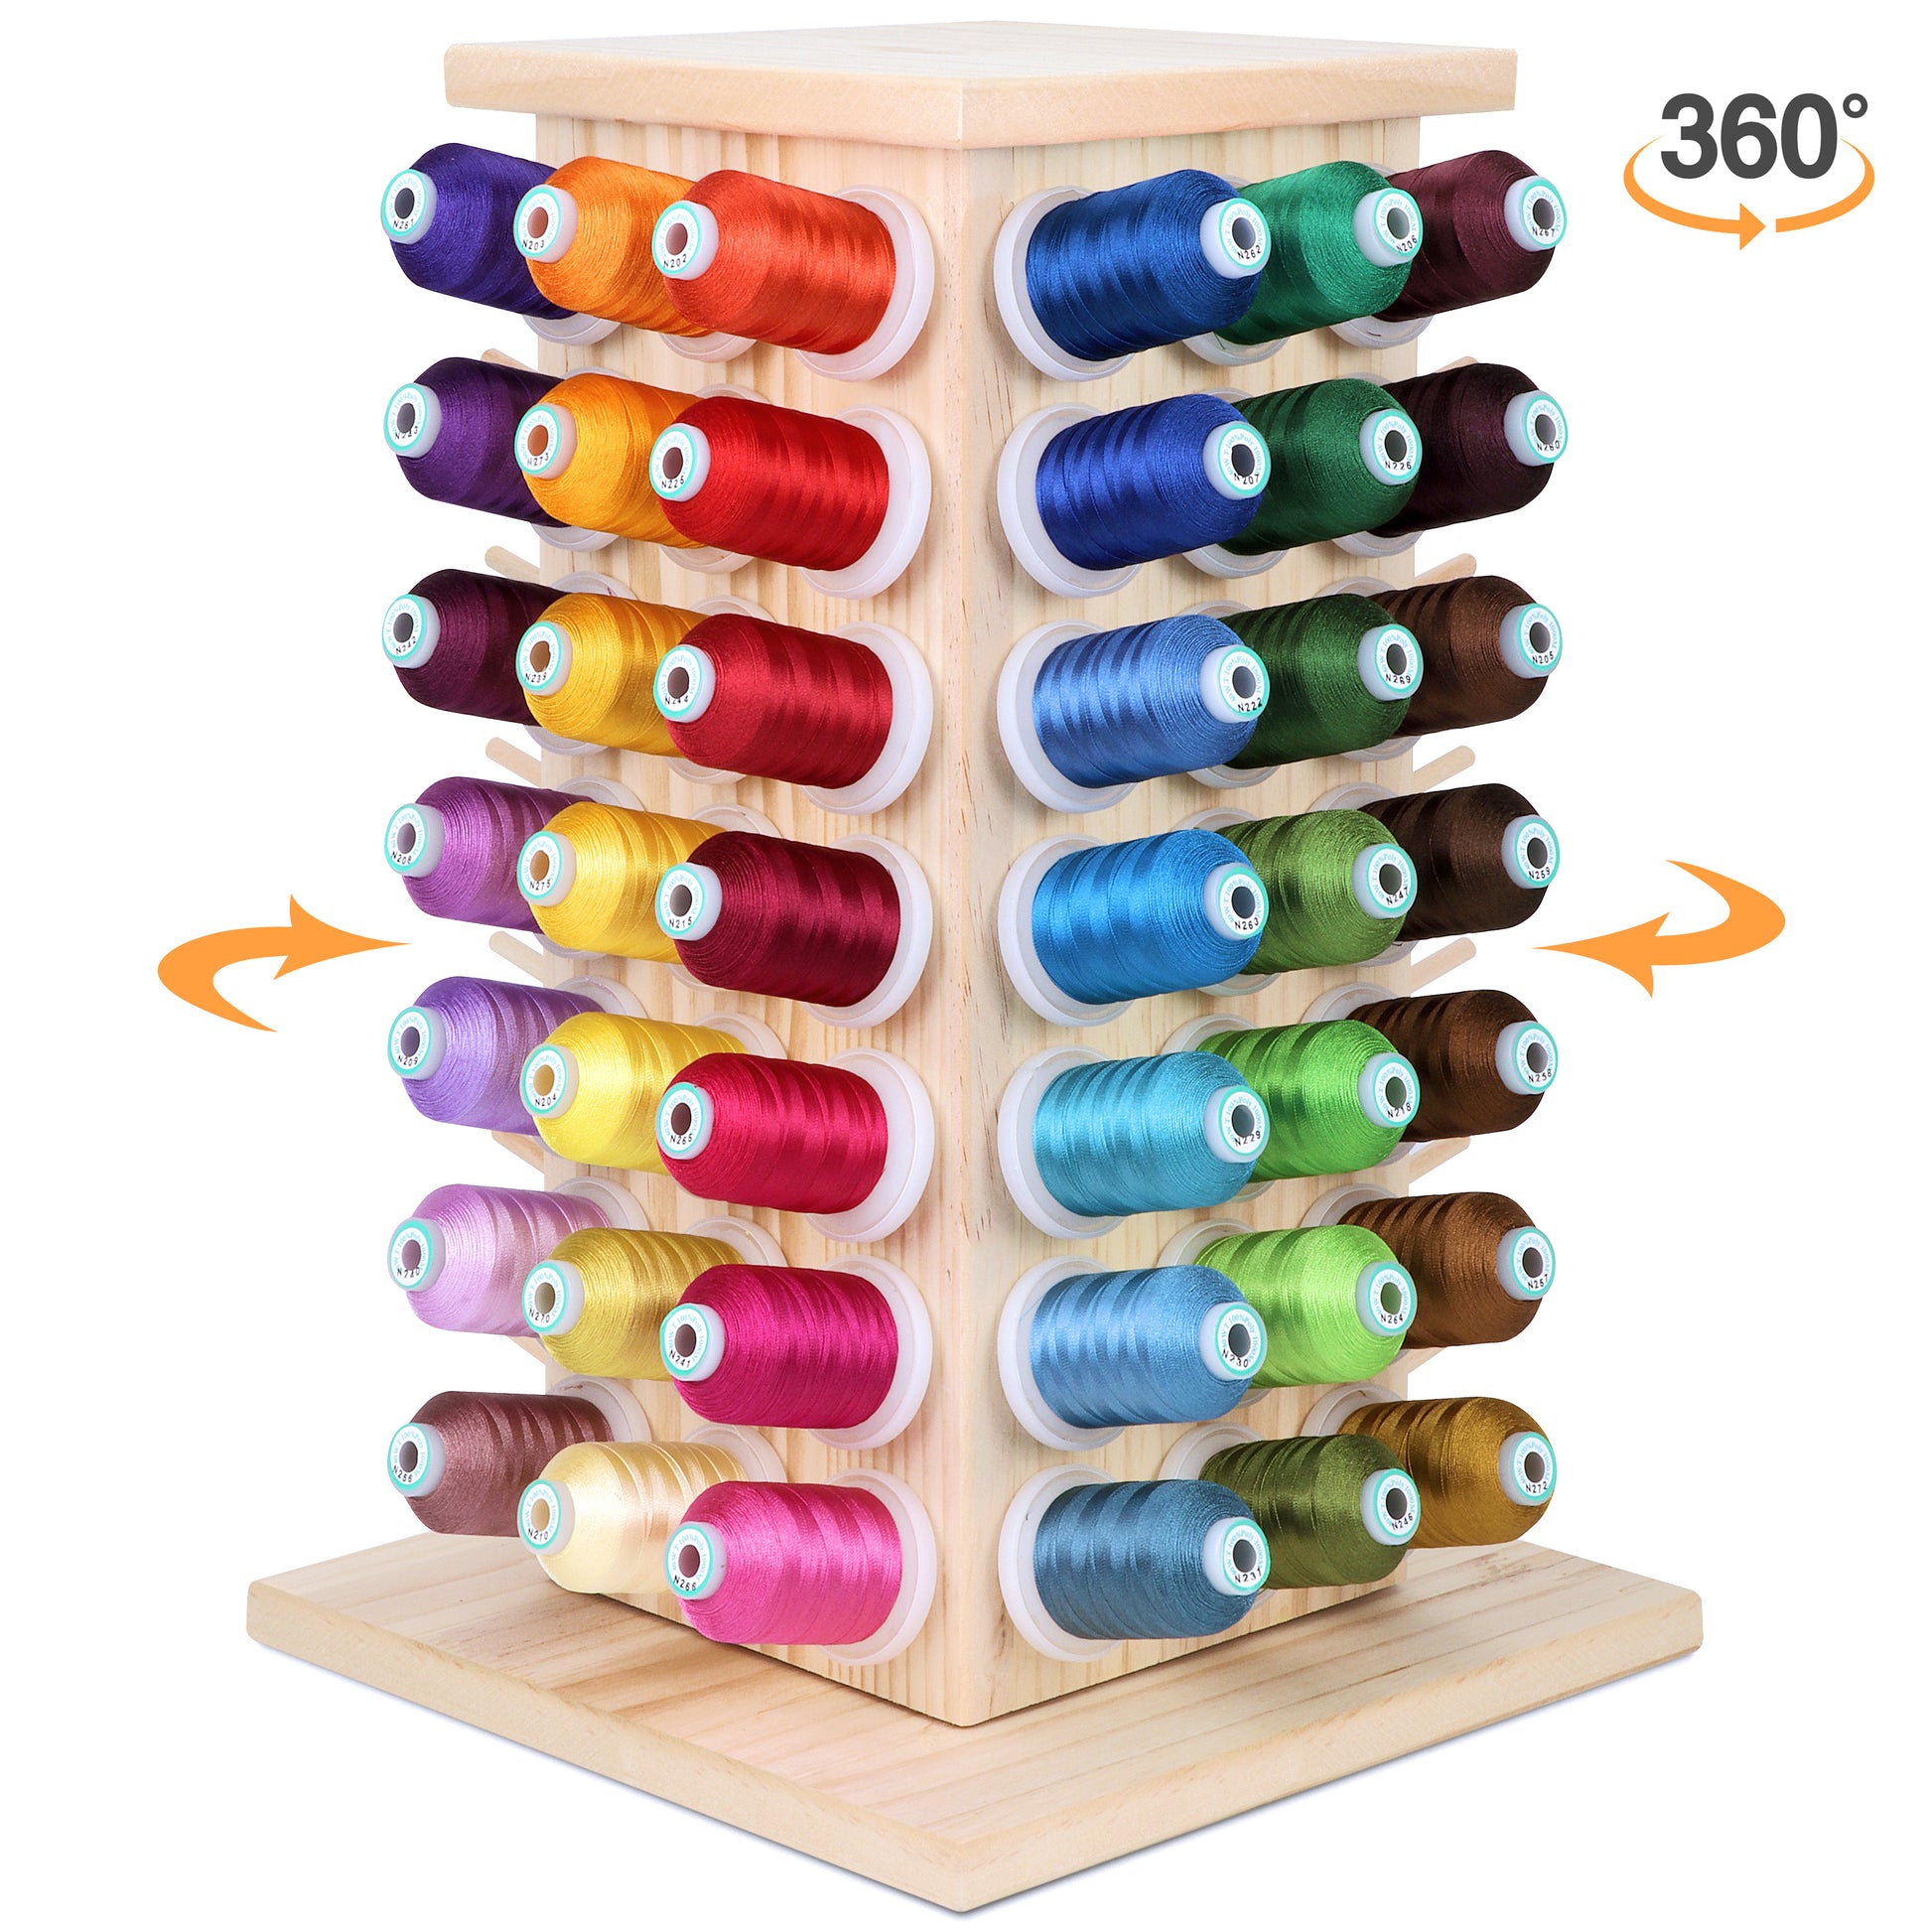 Solid Sewing Thread Storage Box Holder Spools Organizer